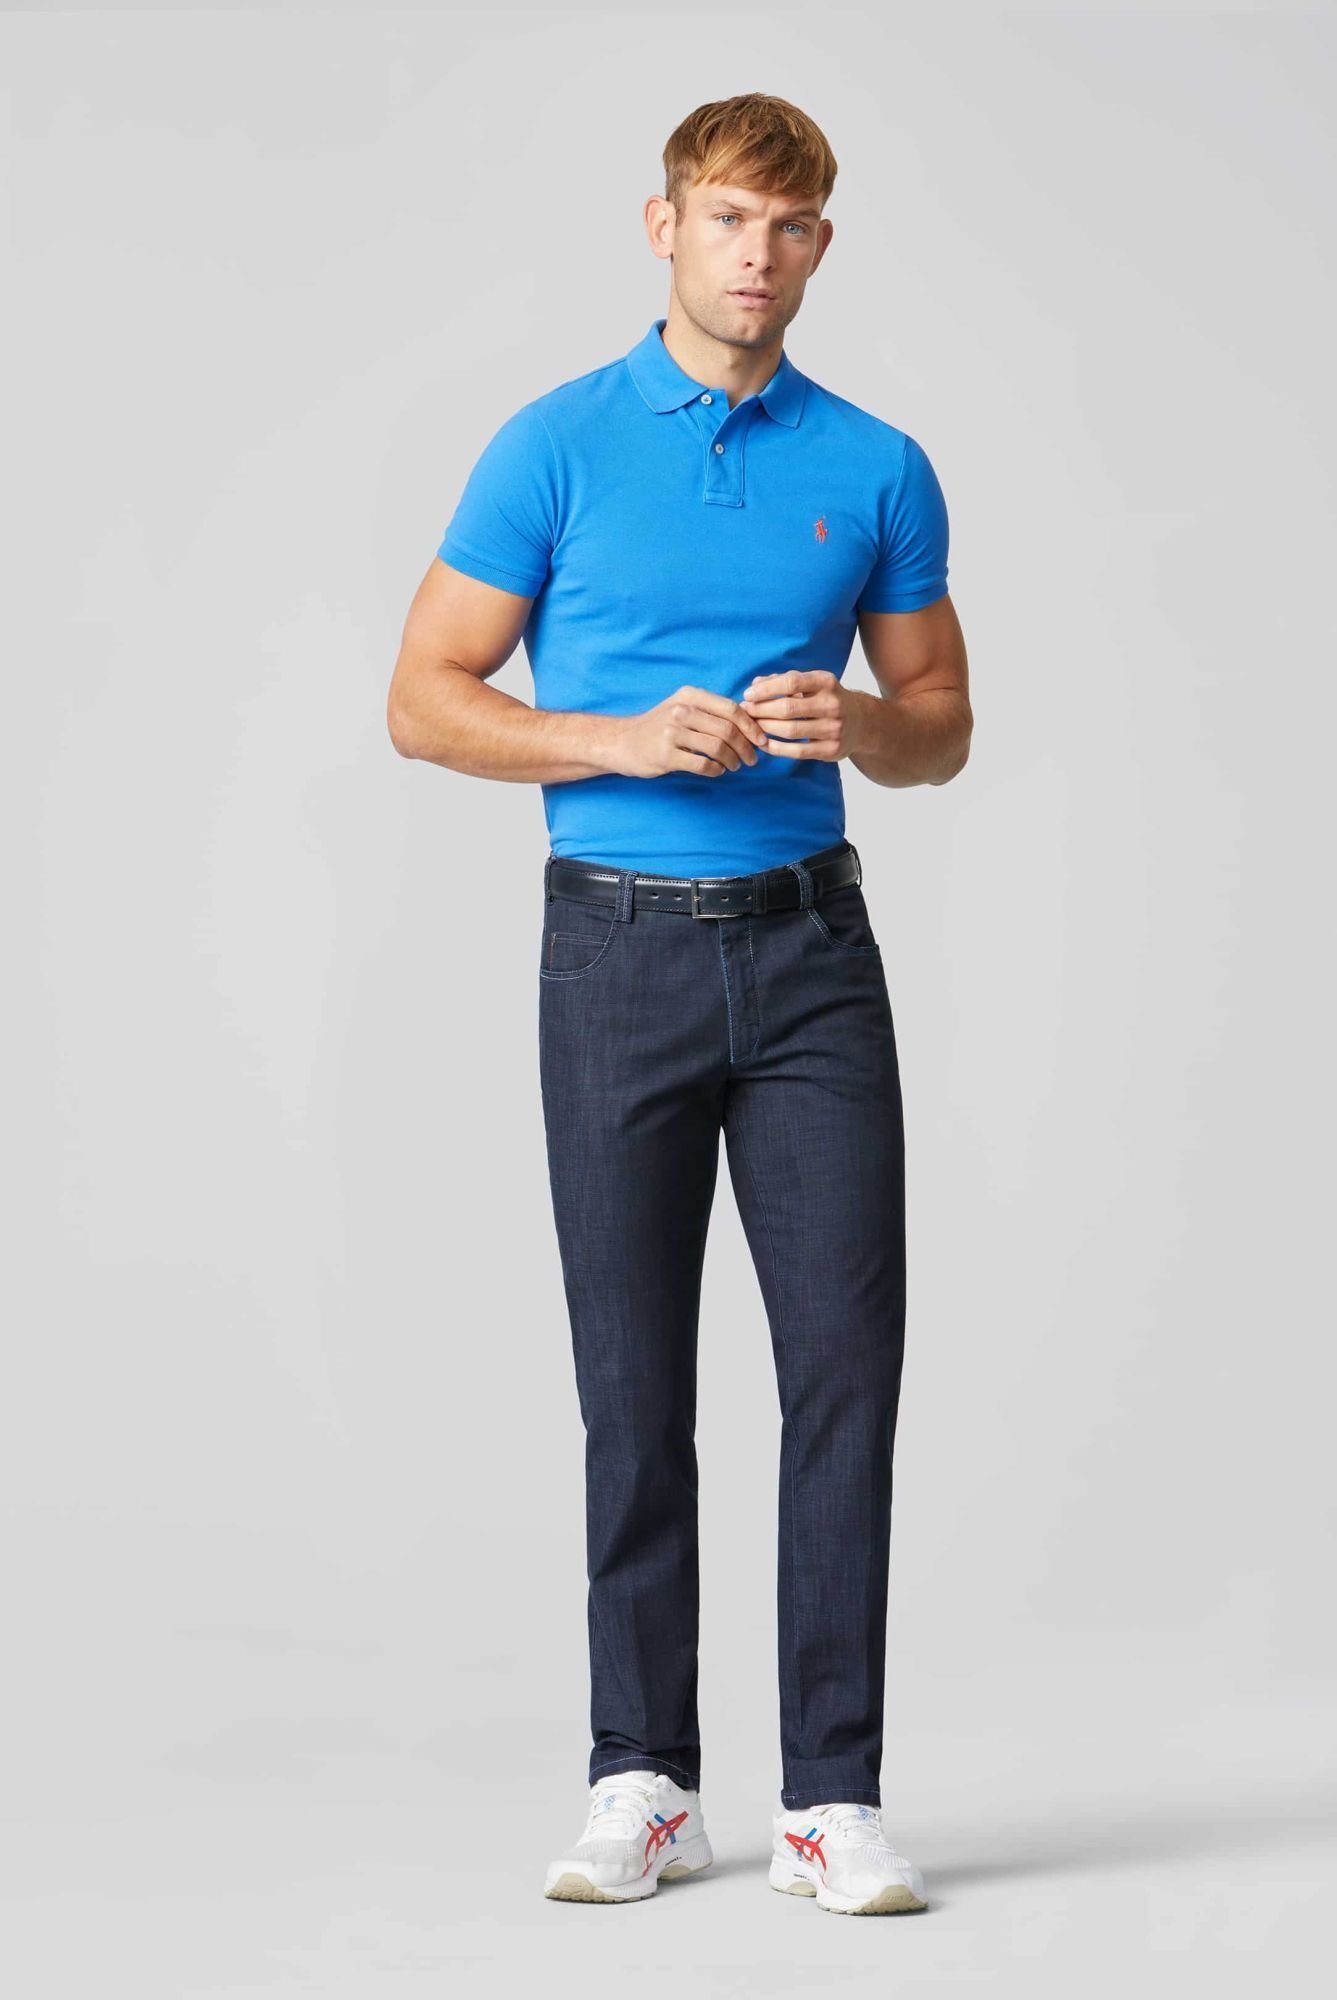 MEYER mit Cross-Denim Diego Straight-Jeans Swingpocket